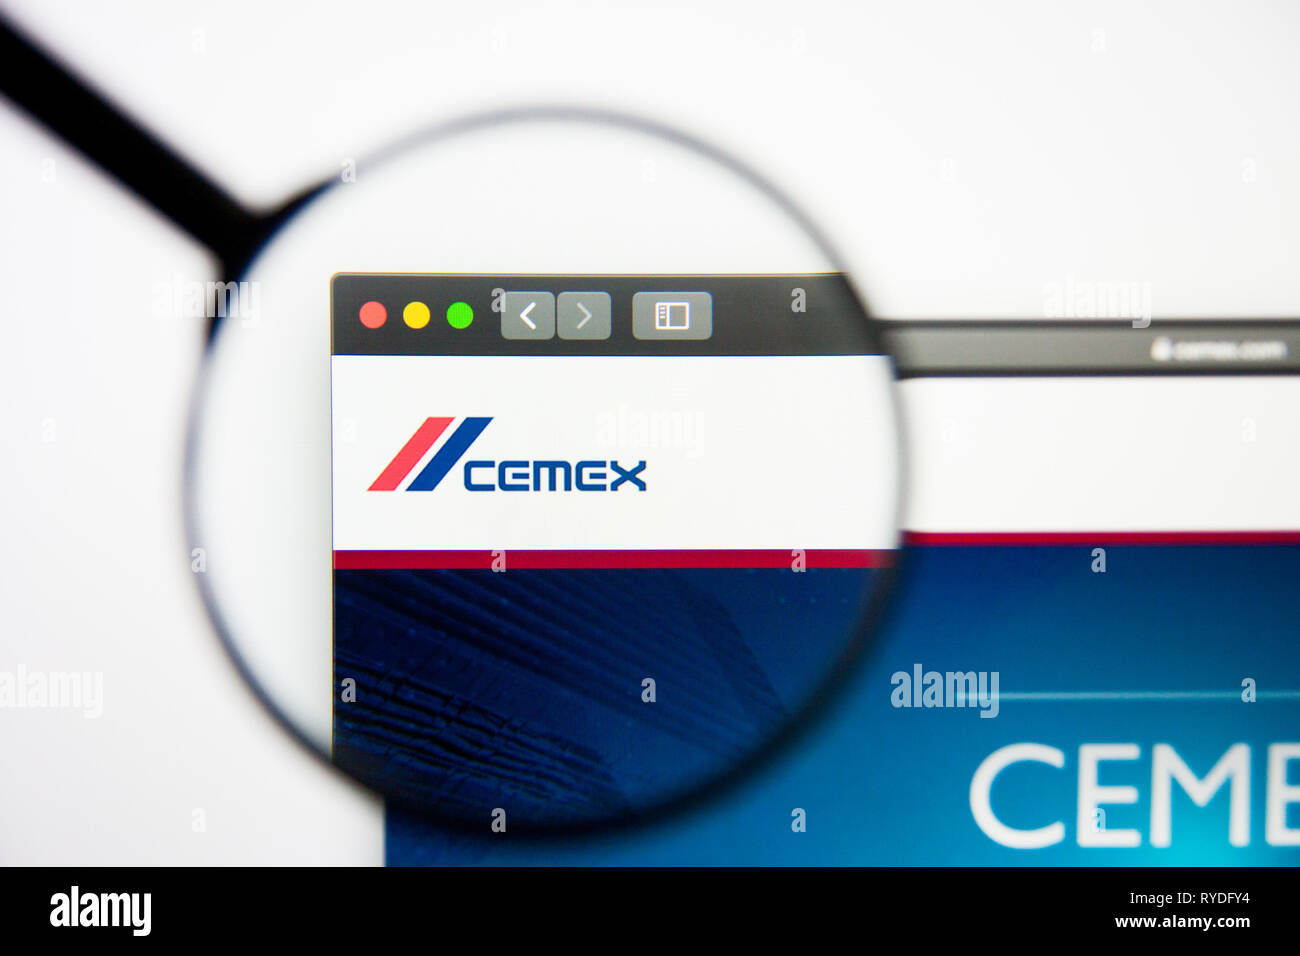 Los Angeles, Kalifornien, USA - 5. März 2019: Cemex Homepage. Im Hinblick auf die CEMEX-Logo sichtbar auf dem Display, Illustrative Editorial Stockfoto